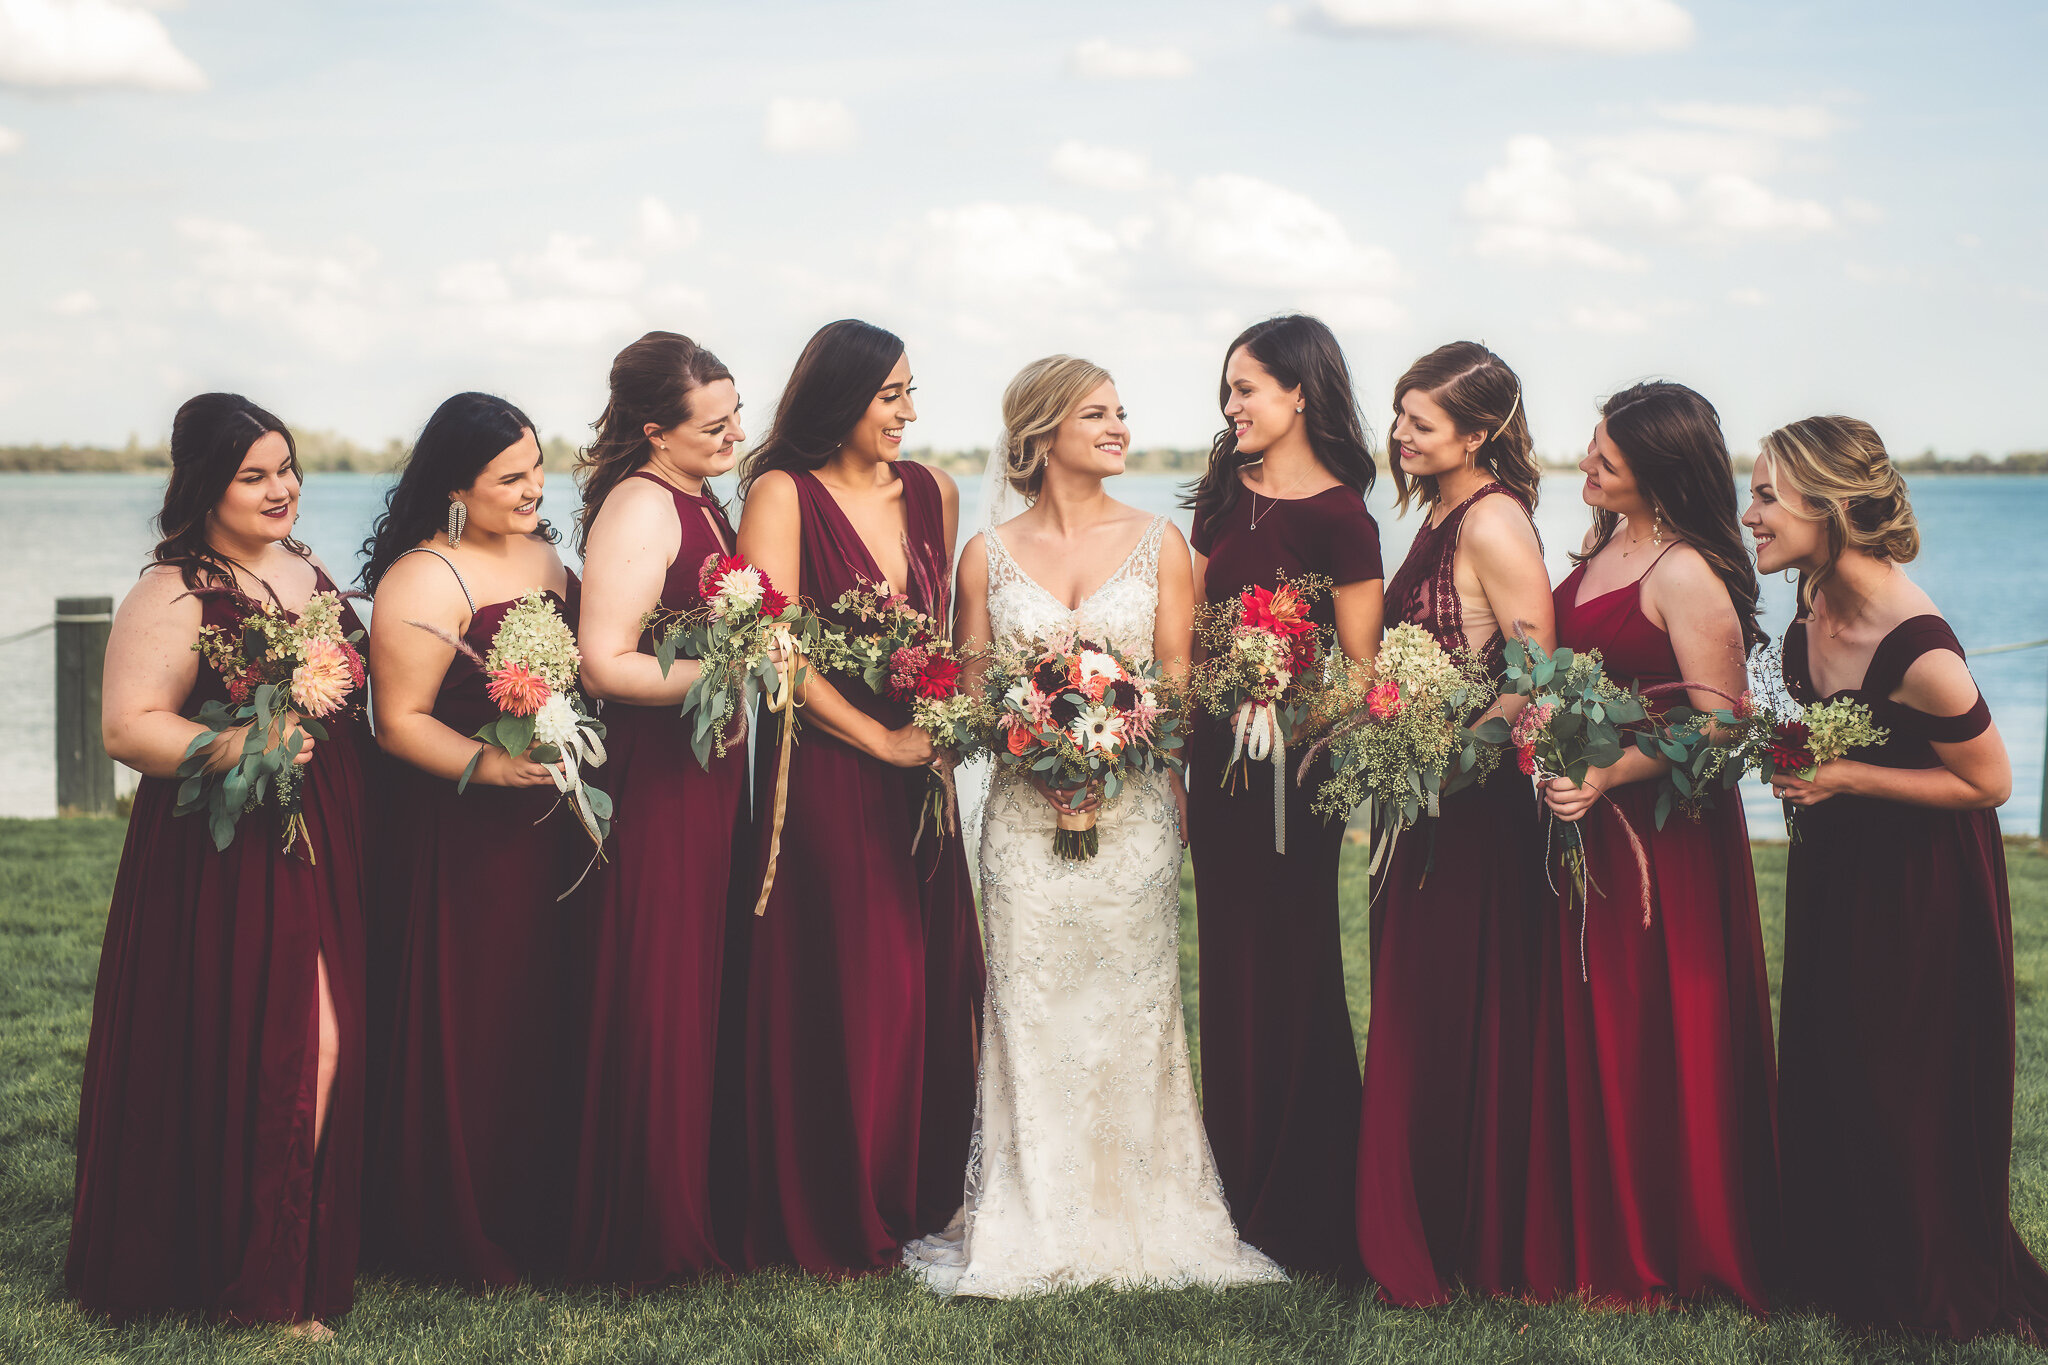 Storytellers Photo Studio | Premium Wedding Photographer in Michigan ...